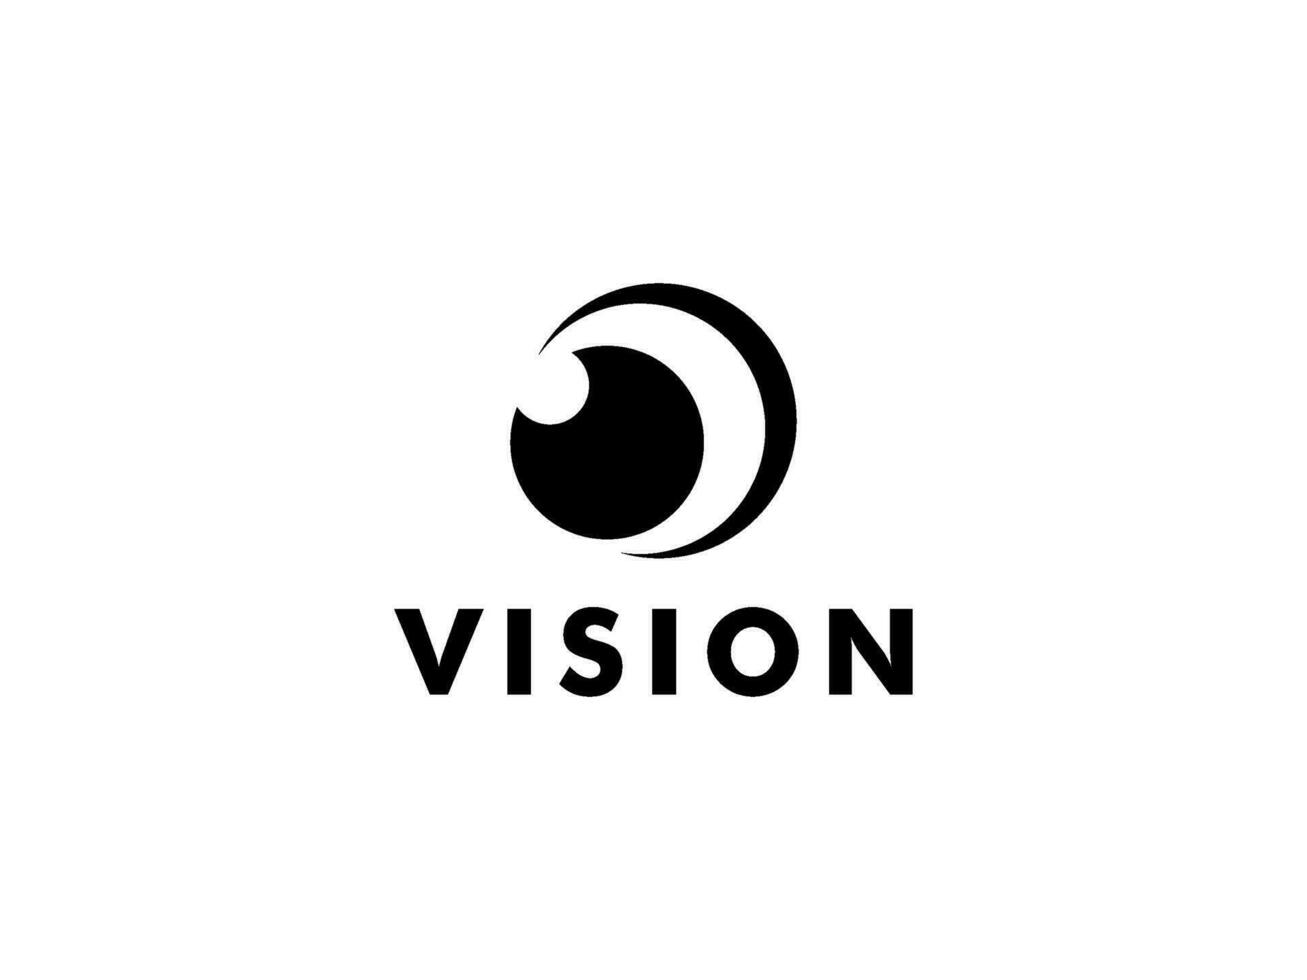 resumen ojo visión logo, creativo visión logo vector modelo